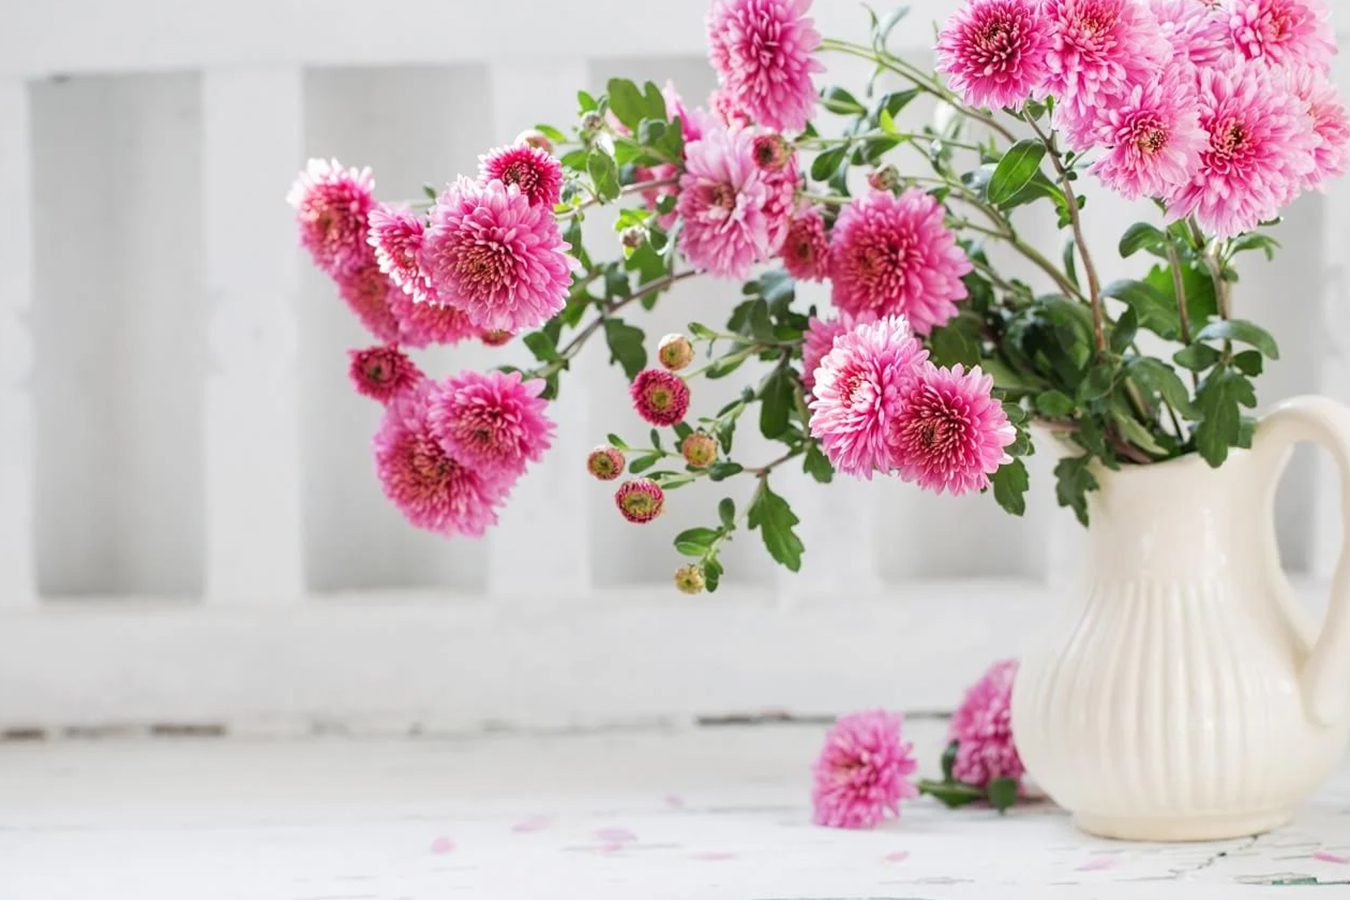 Cveće hrizanteme: njihovo značenje i simbolika po boji